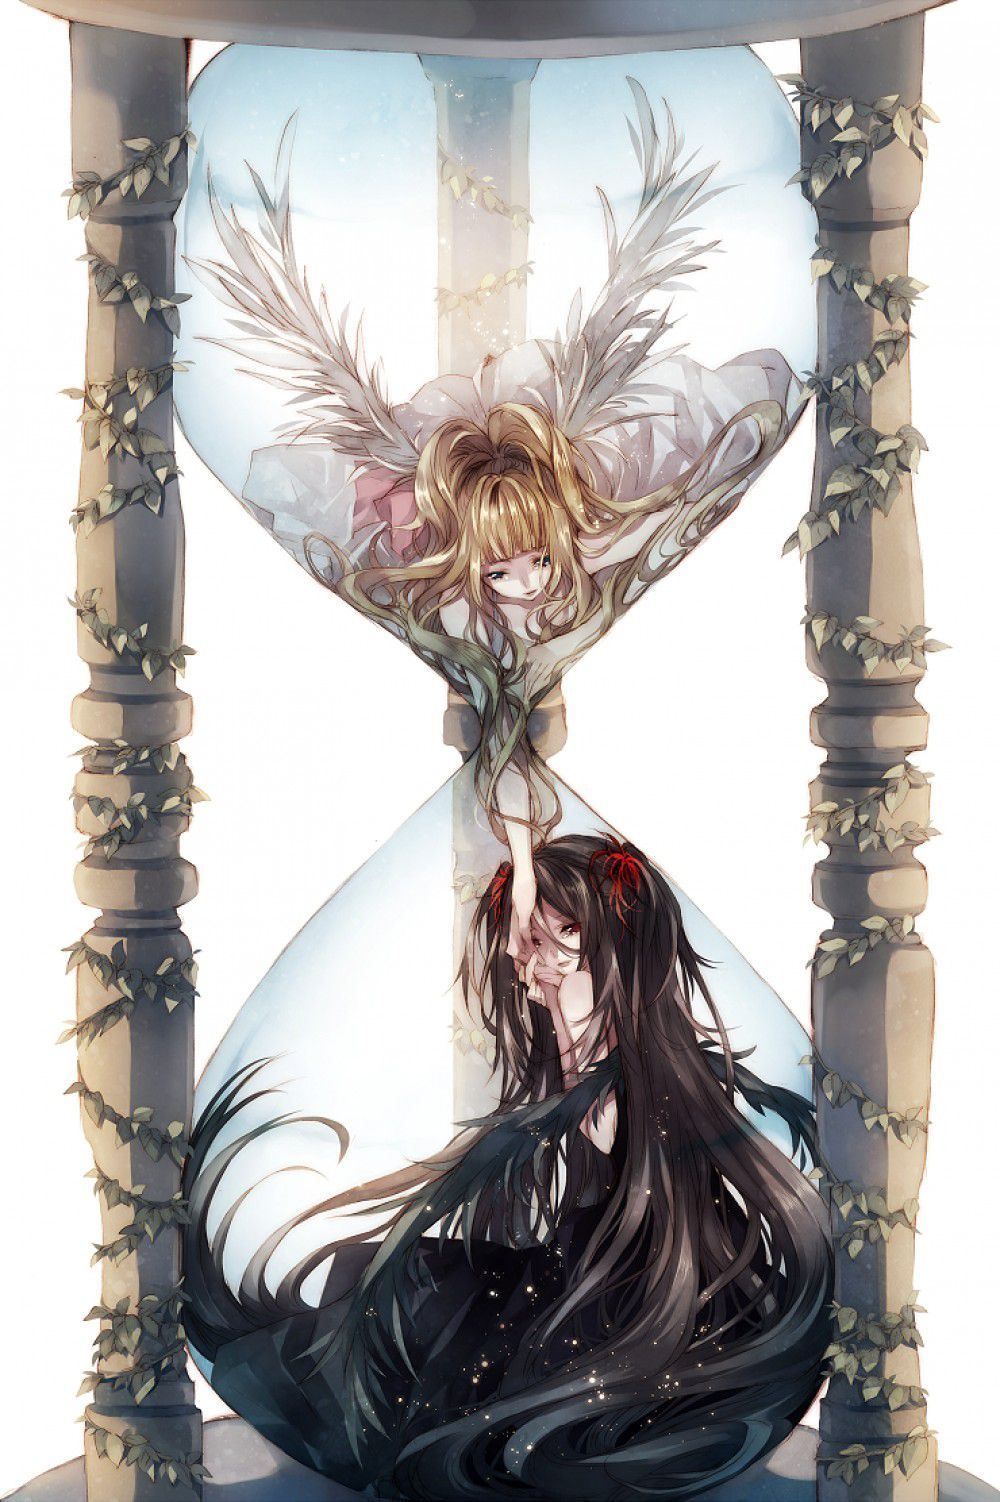 Kết quả hình ảnh cho anime thiên thần và ác quỷ Anime angel girl Anime sisters Anime angel